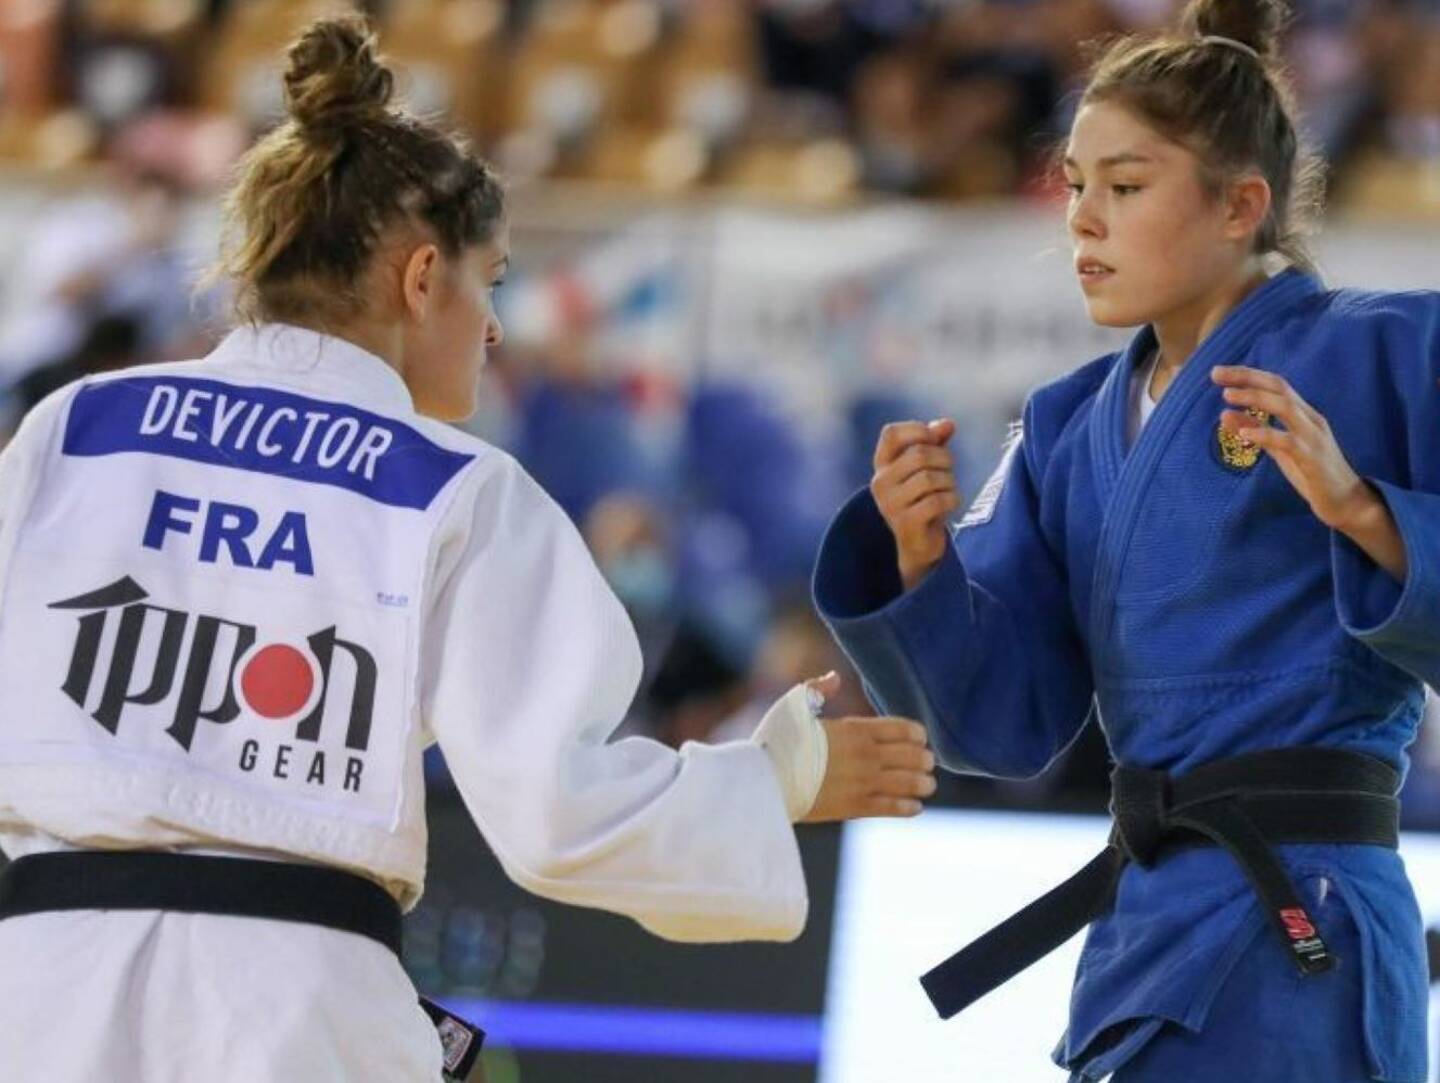 Nouveau podium international pour la judoka varoise Chloé Devictor en - 52kg.	